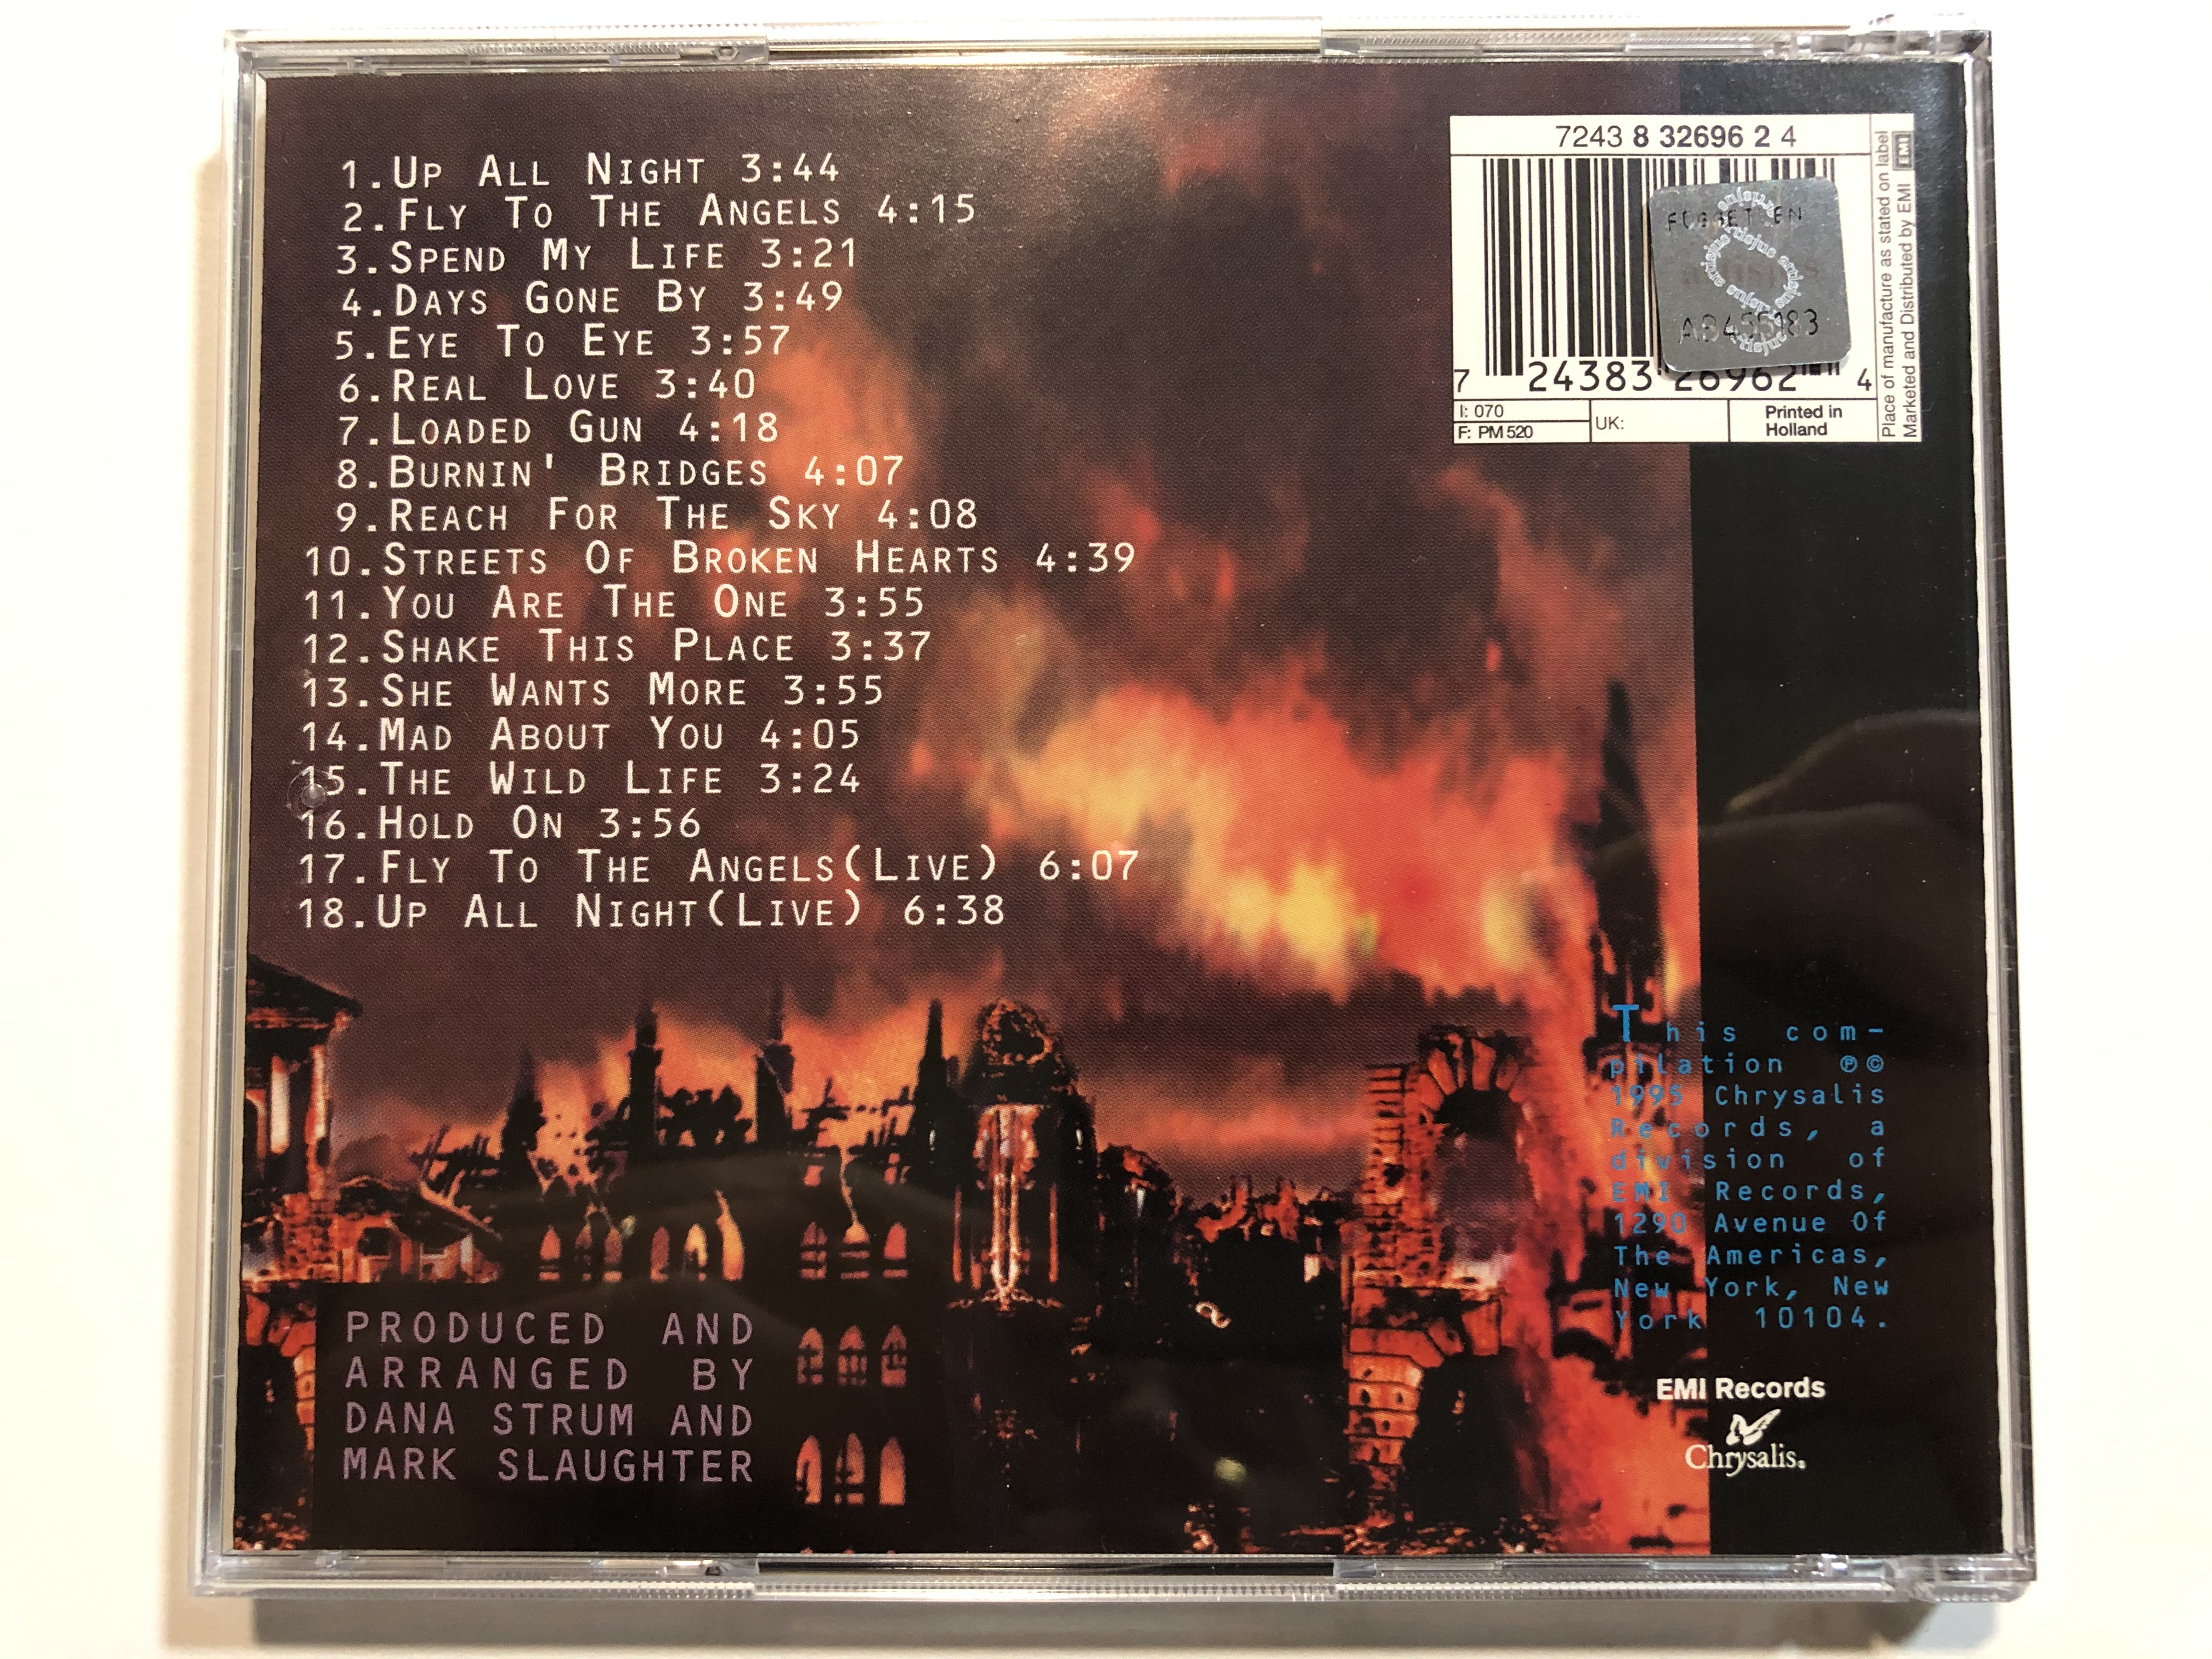 mass-slaughter-the-best-of-slaughter-chrysalis-audio-cd-1995-724383269624-4-.jpg